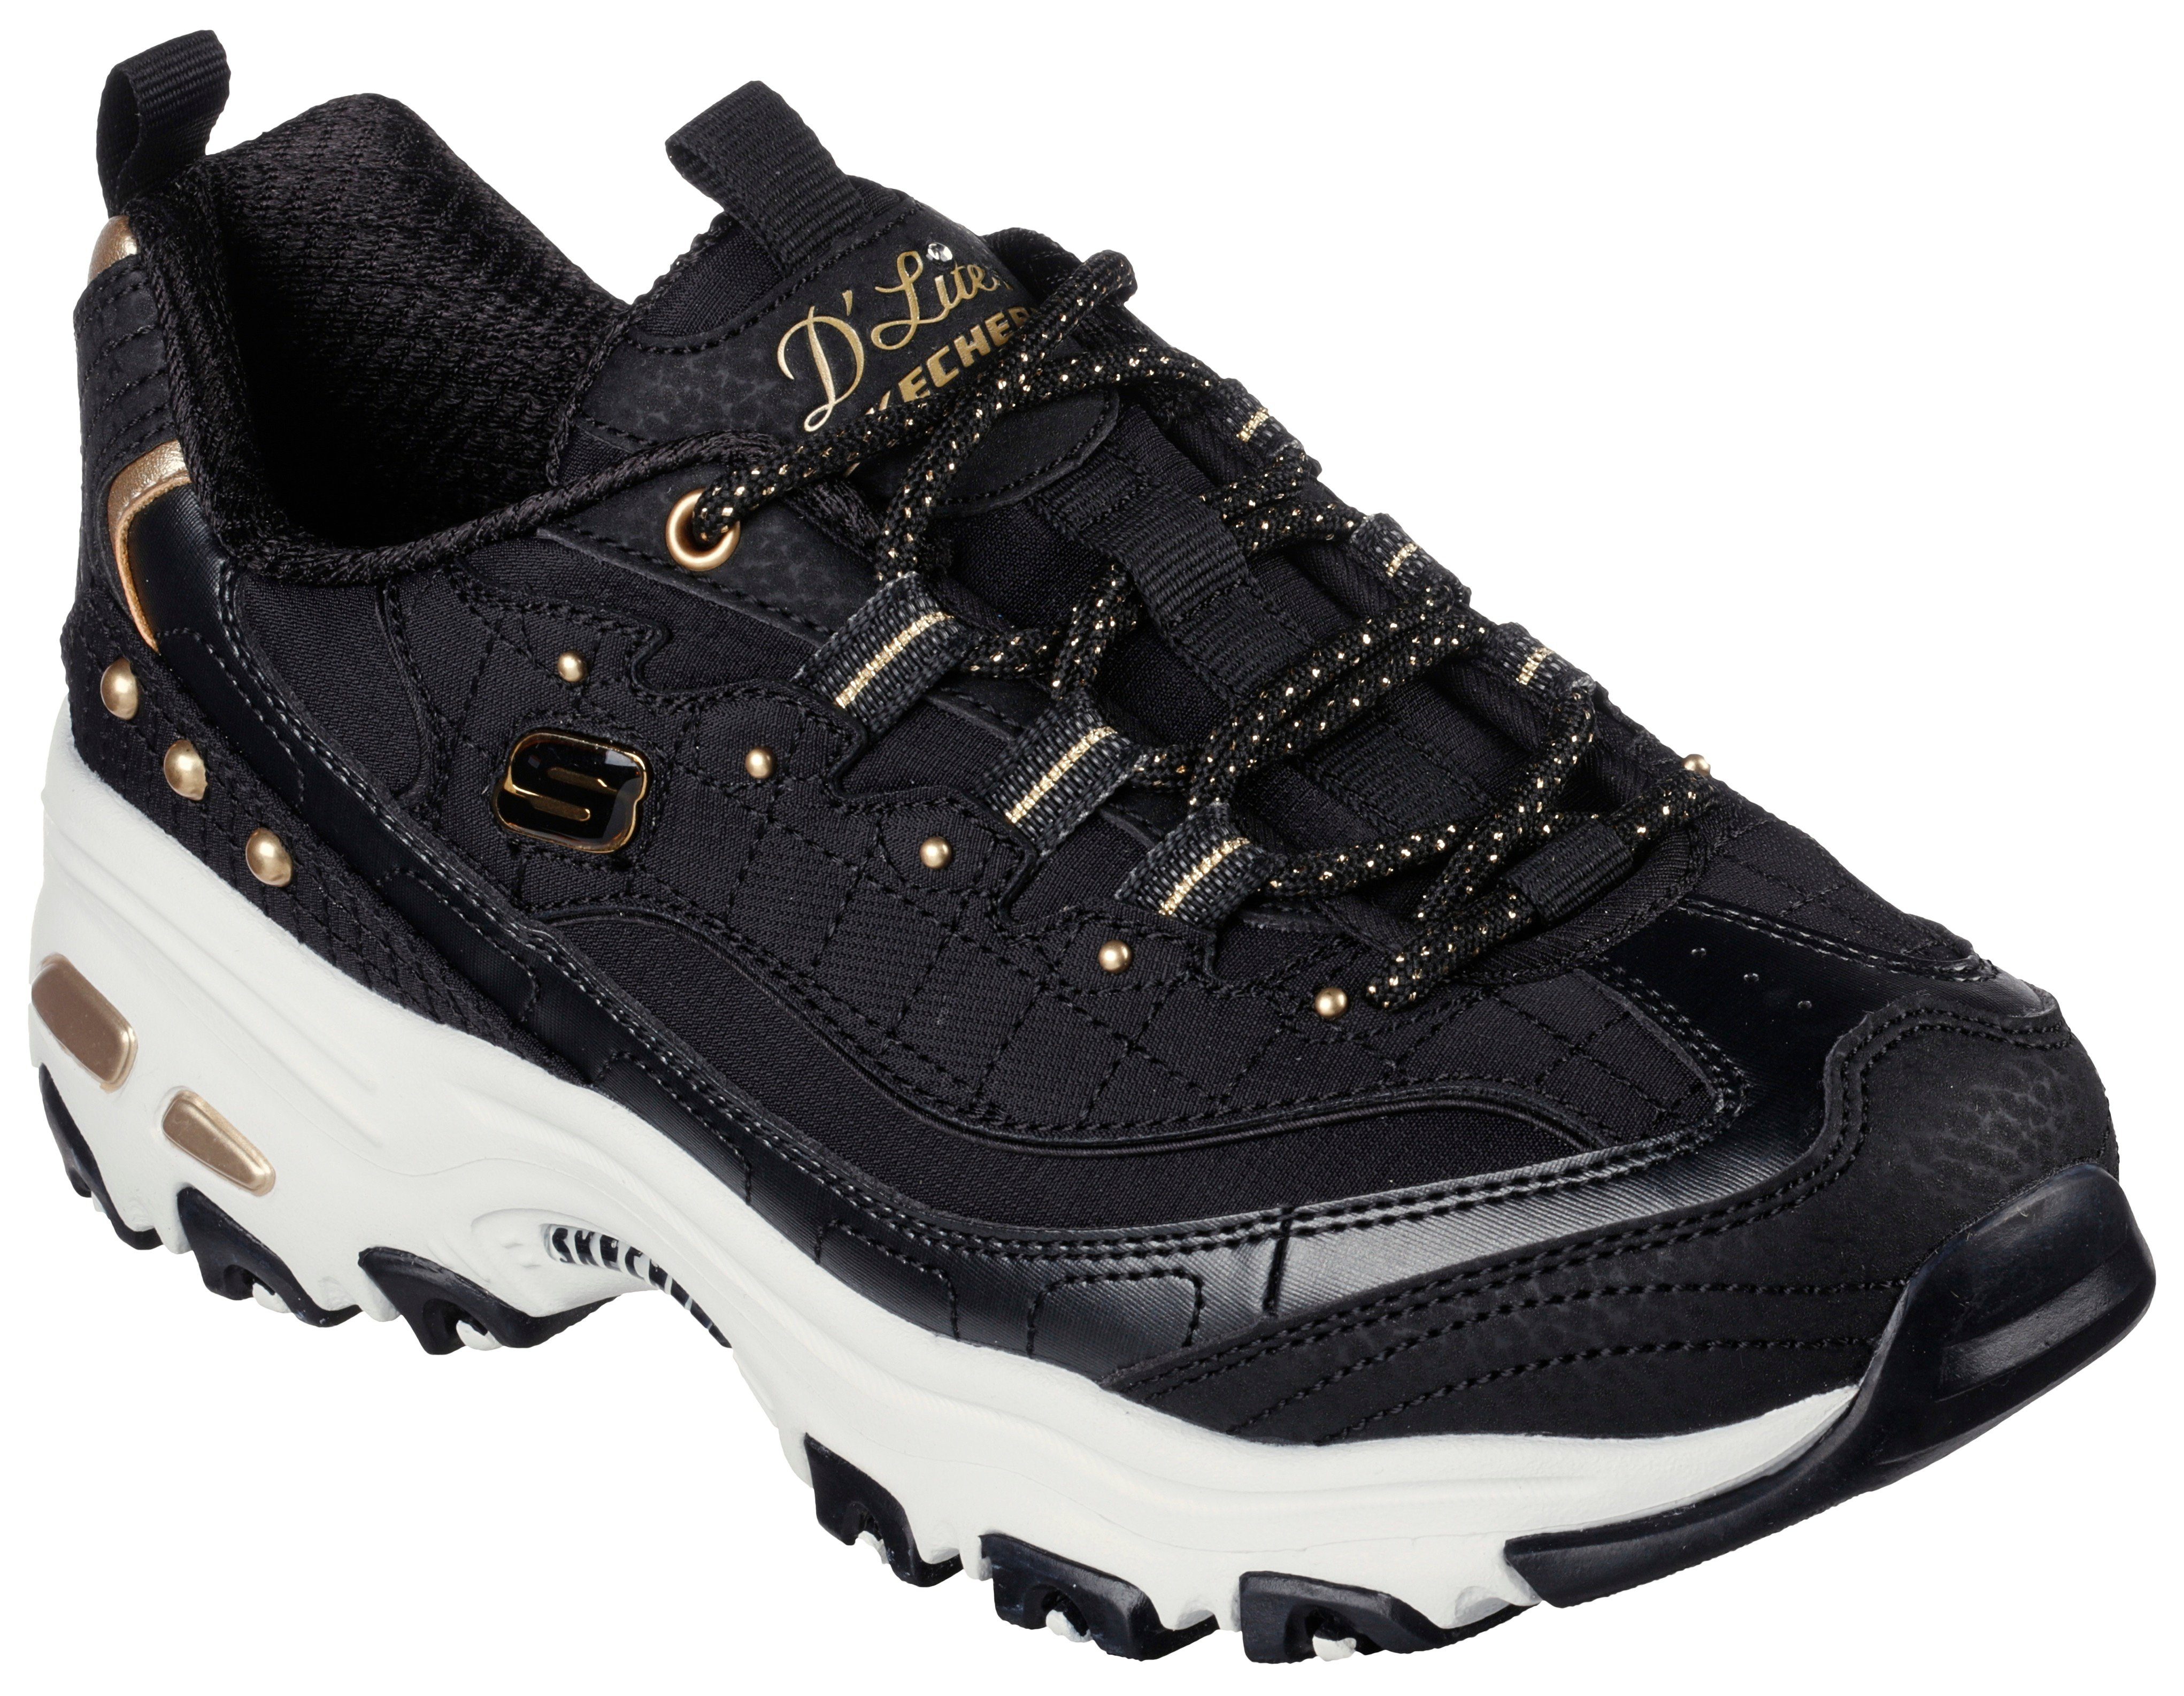 Skechers schönen mit D'LITES Sneaker schwarz-goldfarben Metallic-Details